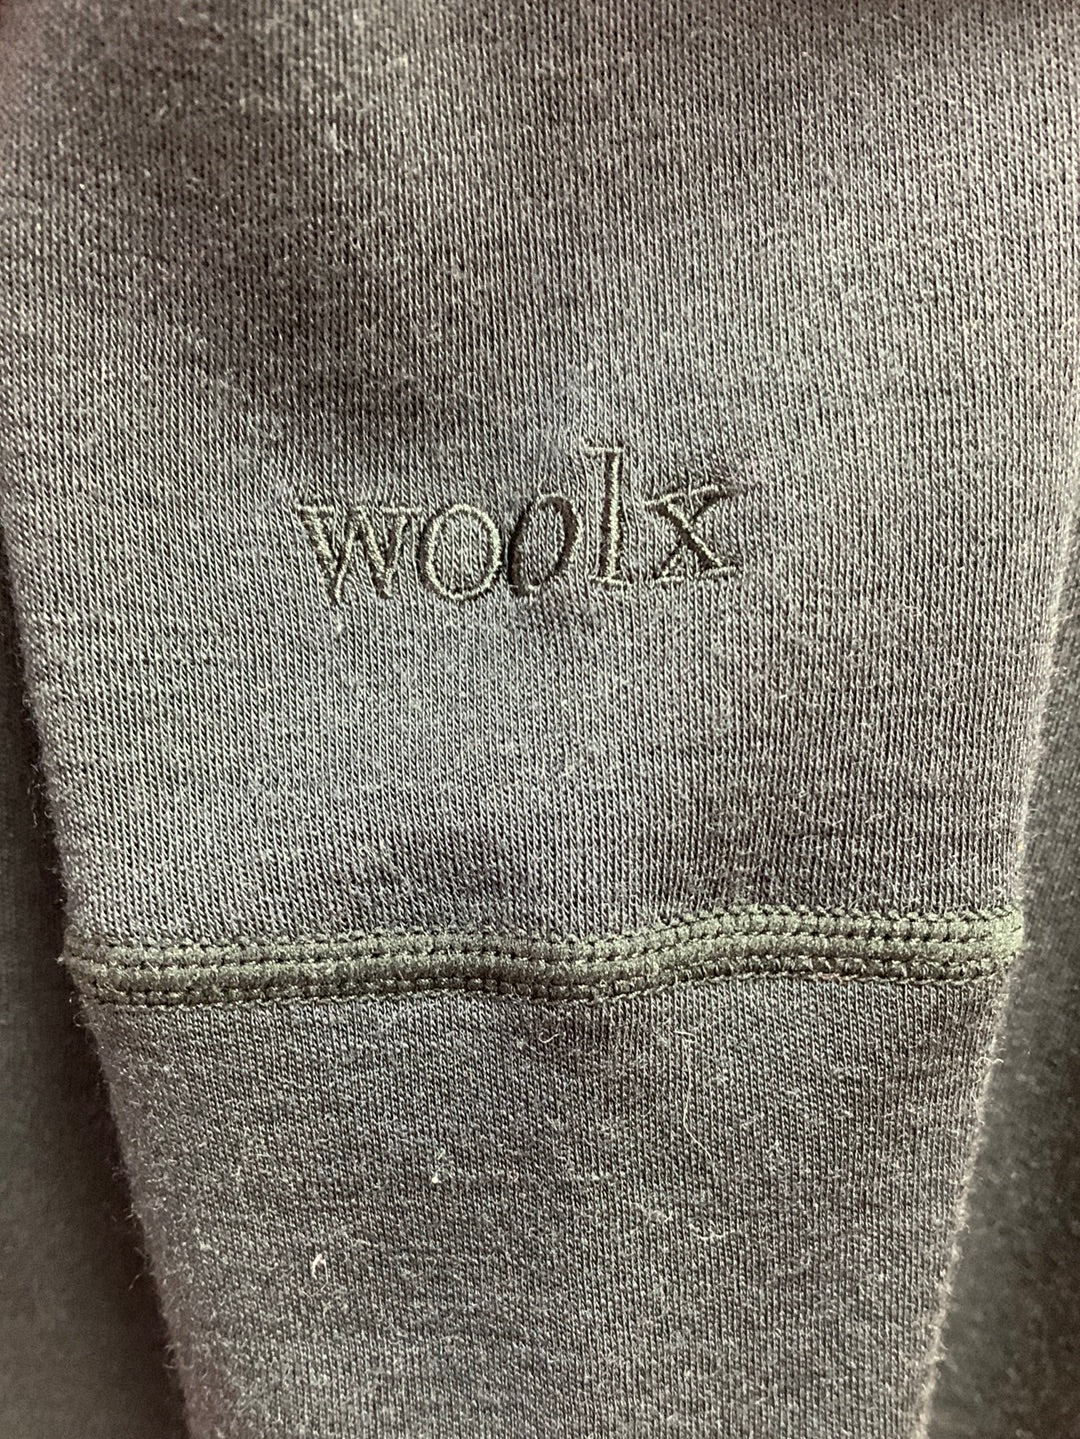 WOOLX black 100% Merino Wool Long Sleeve Turtleneck Top - S